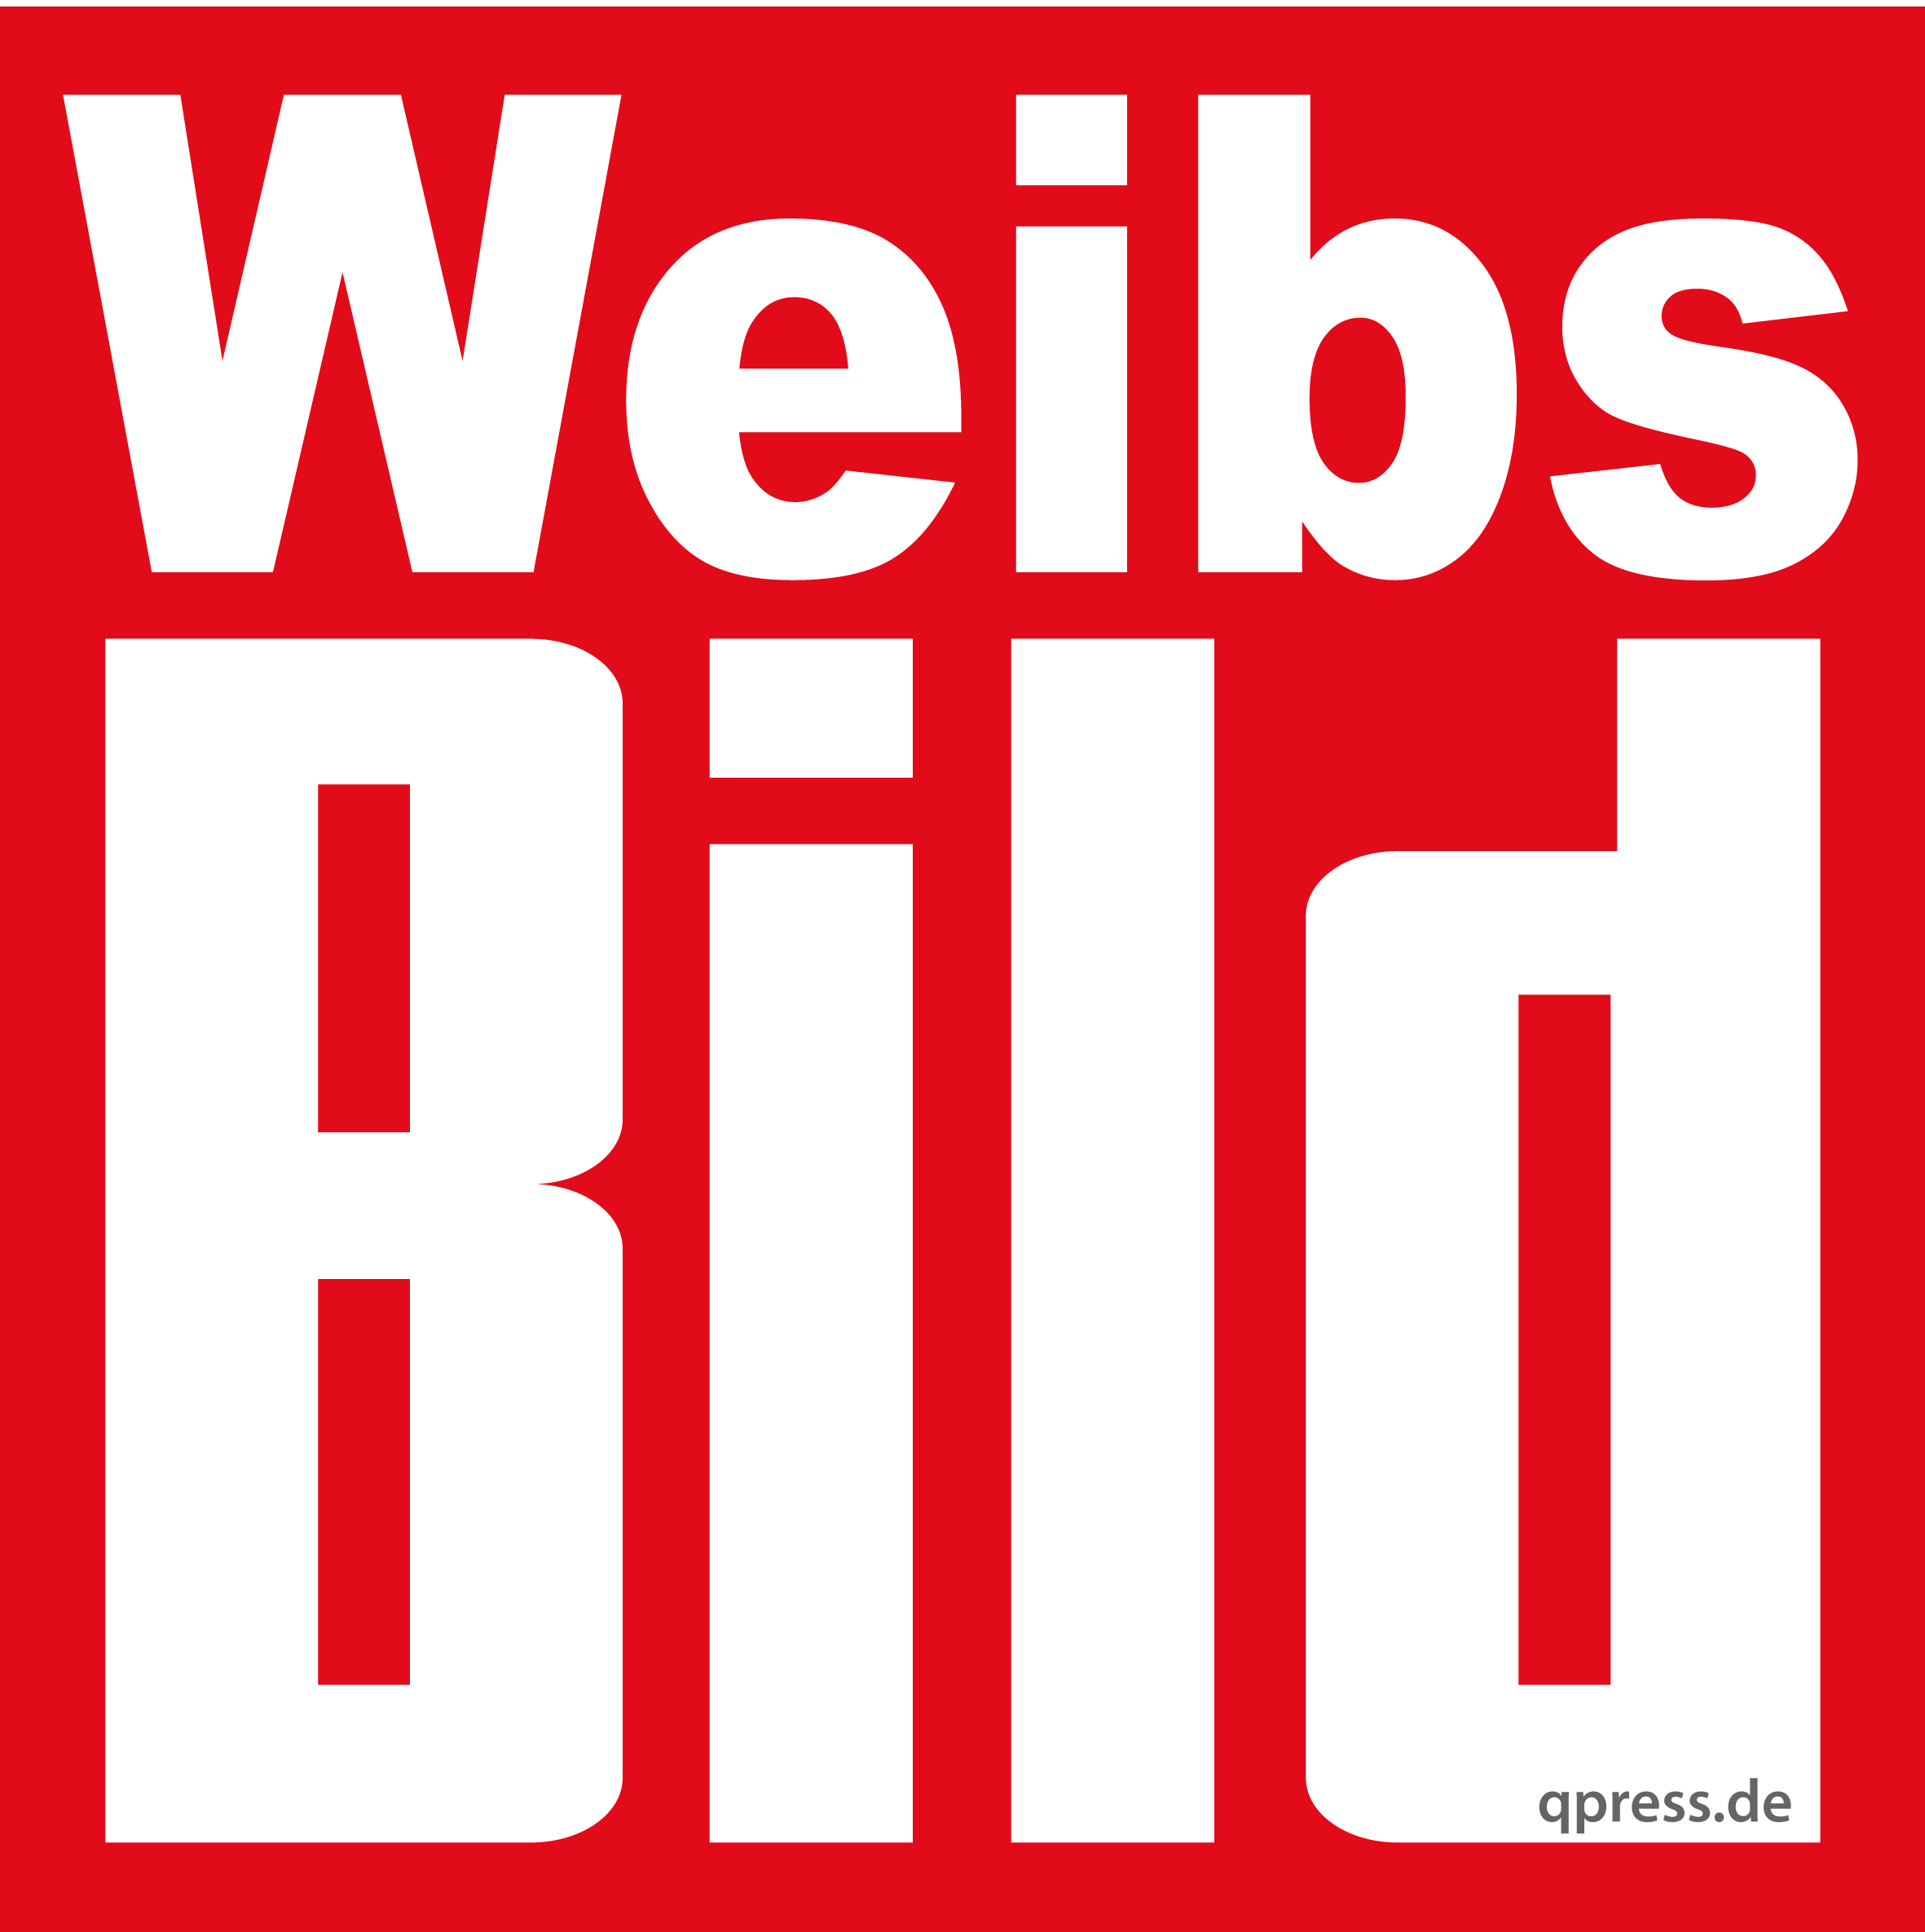 Weibs_BIld_logo_neue_Springer_Stiefel_Kampfpostille_300dpi